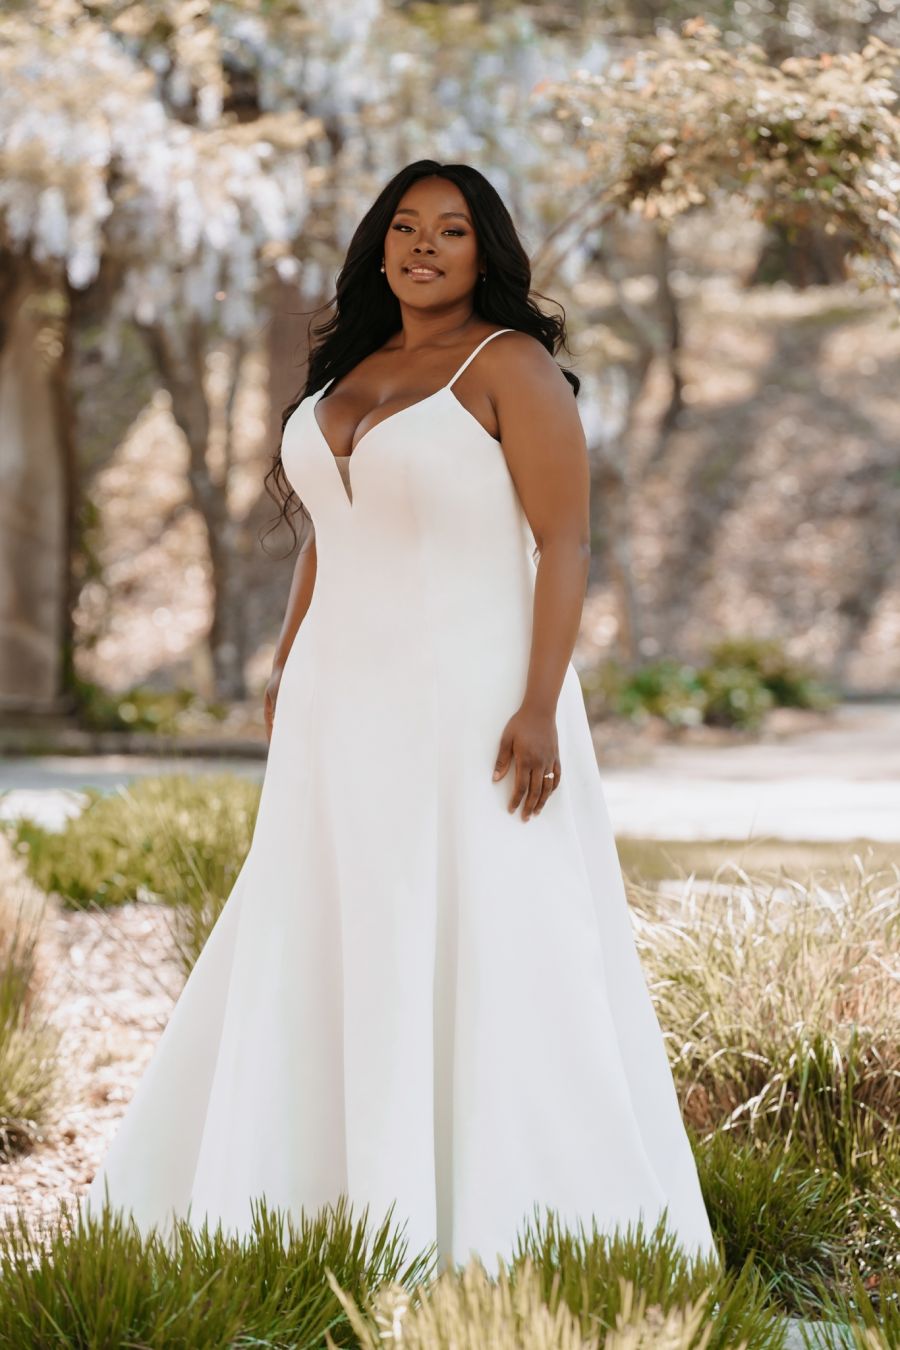 affjedring Generel Rådgiver 9 Plus Size Wedding Dresses For The Curvy Bride - Wedding Journal